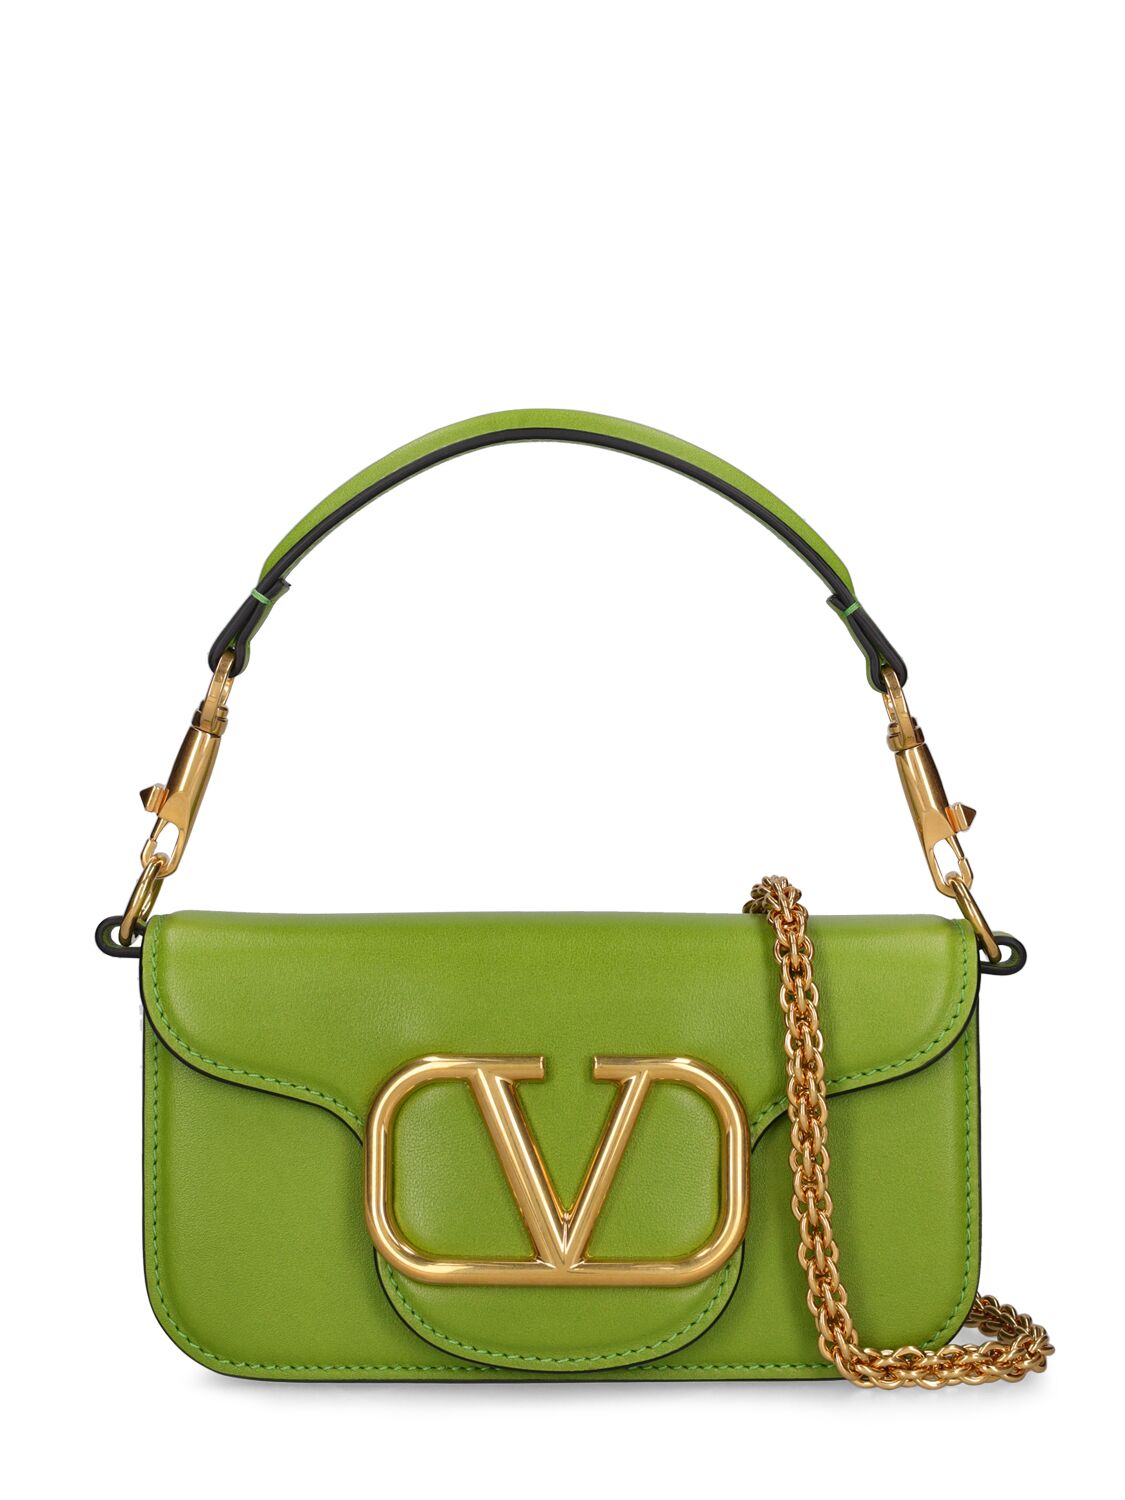 væv tegnebog bånd Valentino Garavani Small Locò Leather Top Handle Bag In Chartreuse |  ModeSens